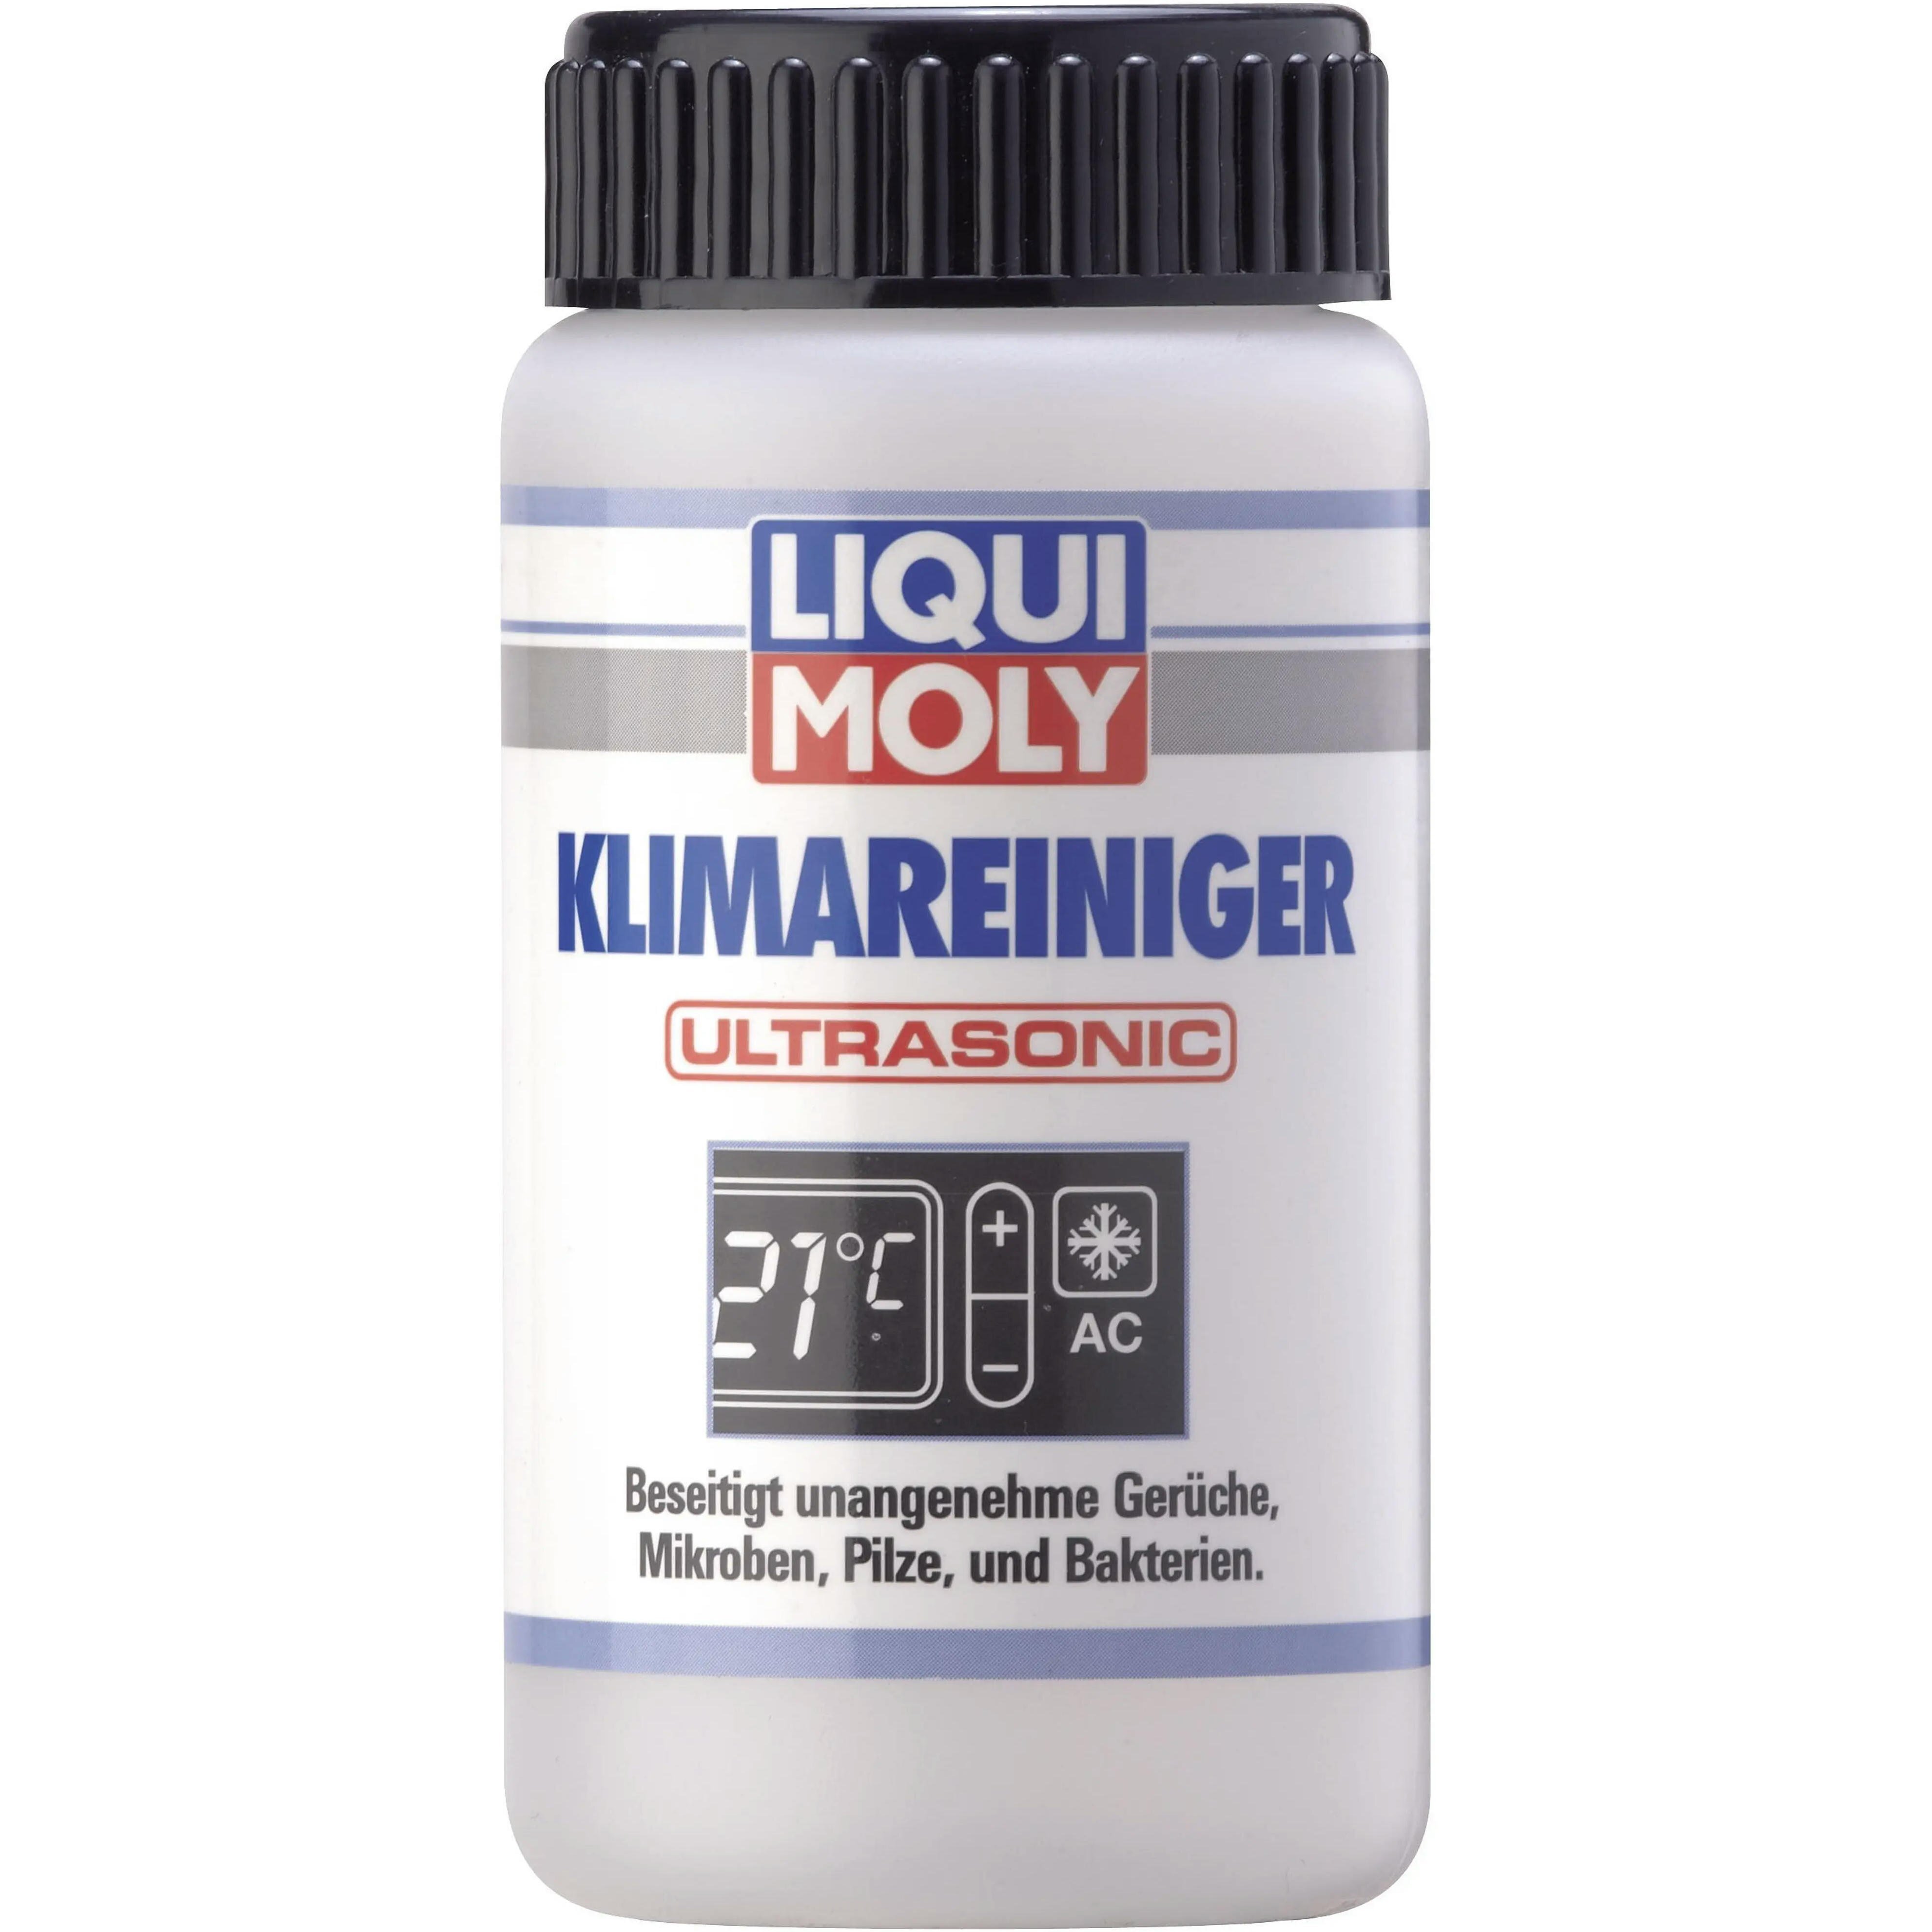 Очиститель Liqui Moly для кондиционера (для ультразвуковых установок) Klimareiniger Ultrasonic 0,1л (4100420040795) фото 1